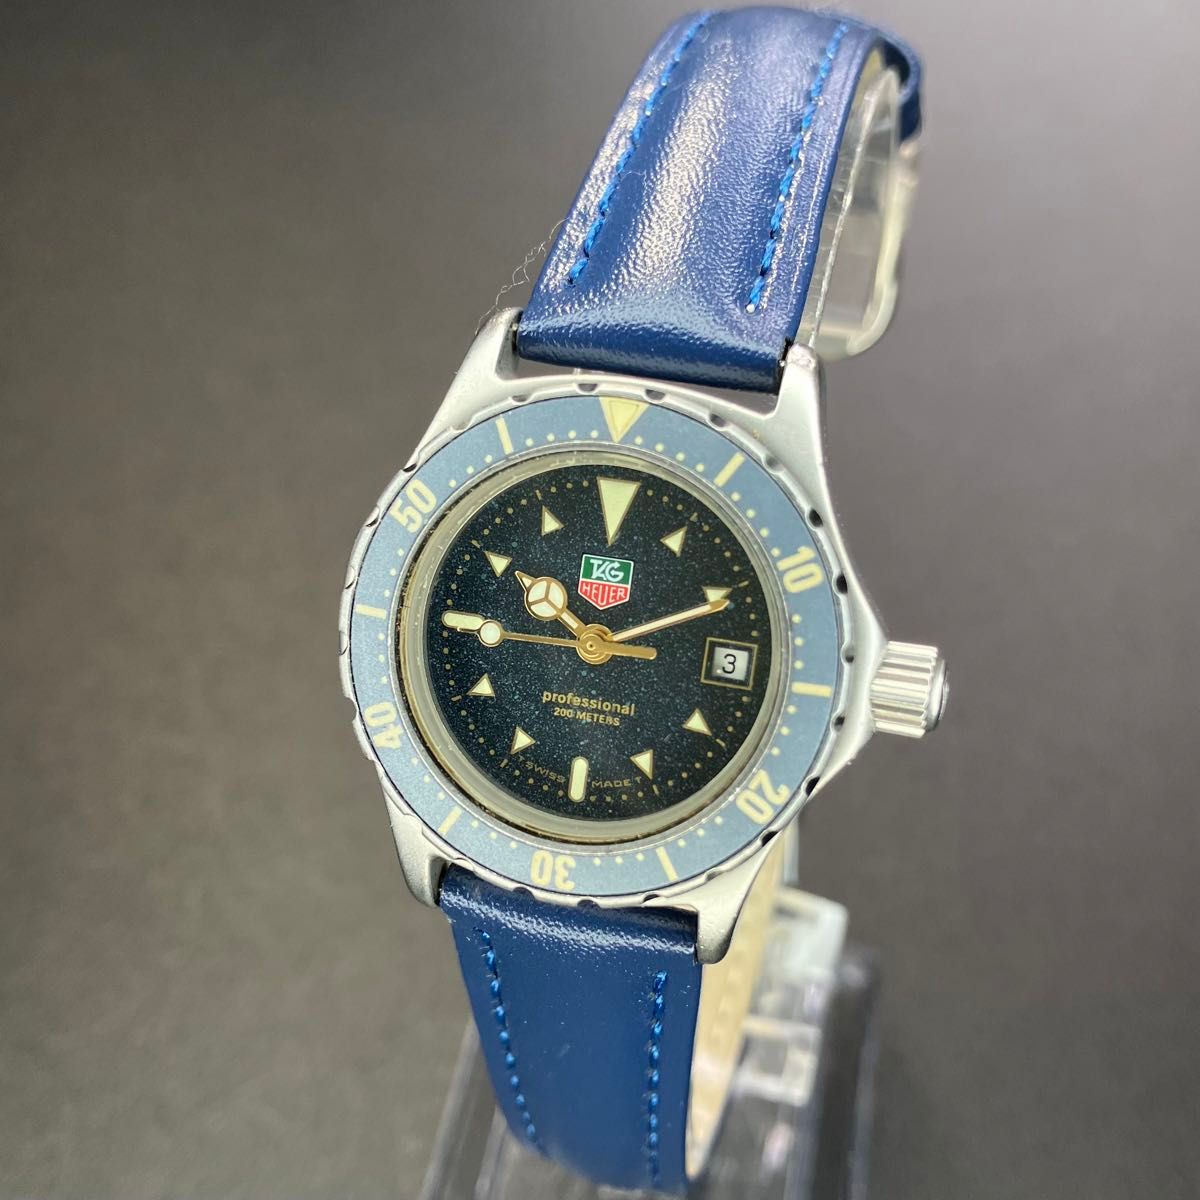 【良品 可動品】タグホイヤー 腕時計 プロフェッショナル ダイバー 正規品 レディース ネイビー ブルー 【2404Ss21】